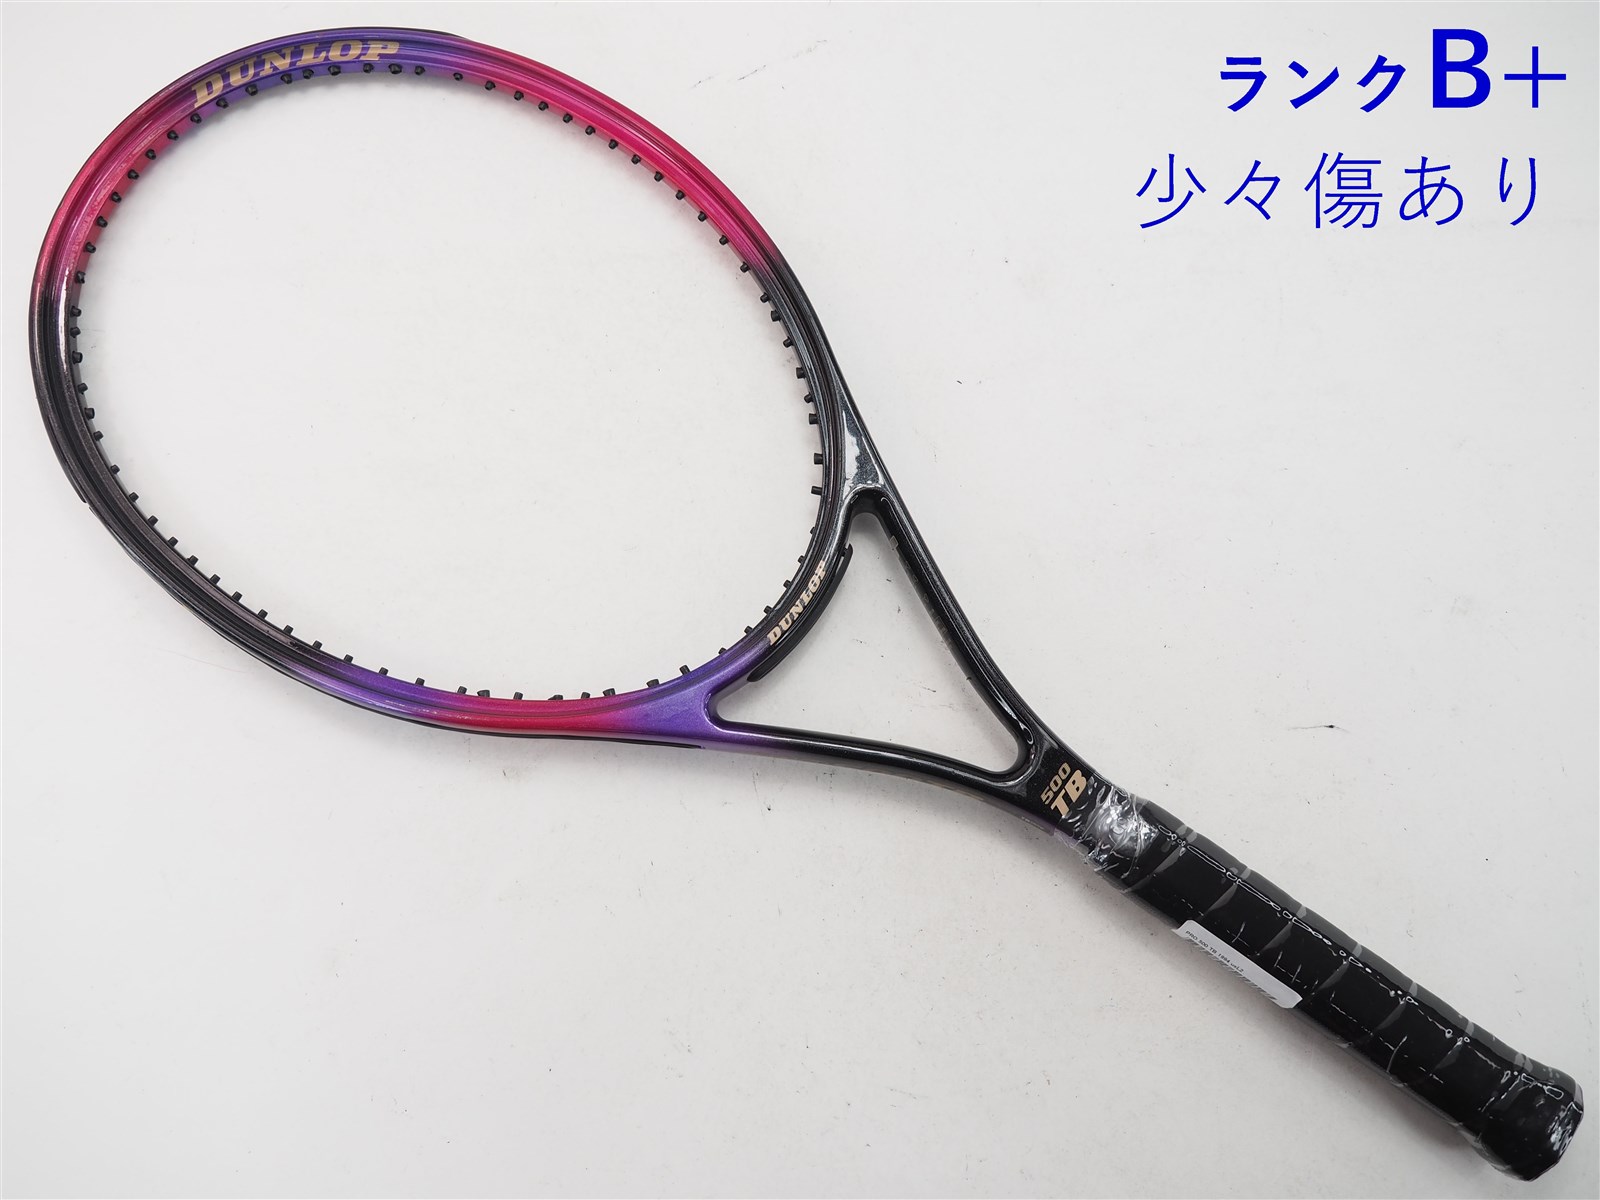 テニスラケット ダンロップ エフエックス500 ライト 2020年モデル (G2)DUNLOP FX 500 LITE 2020